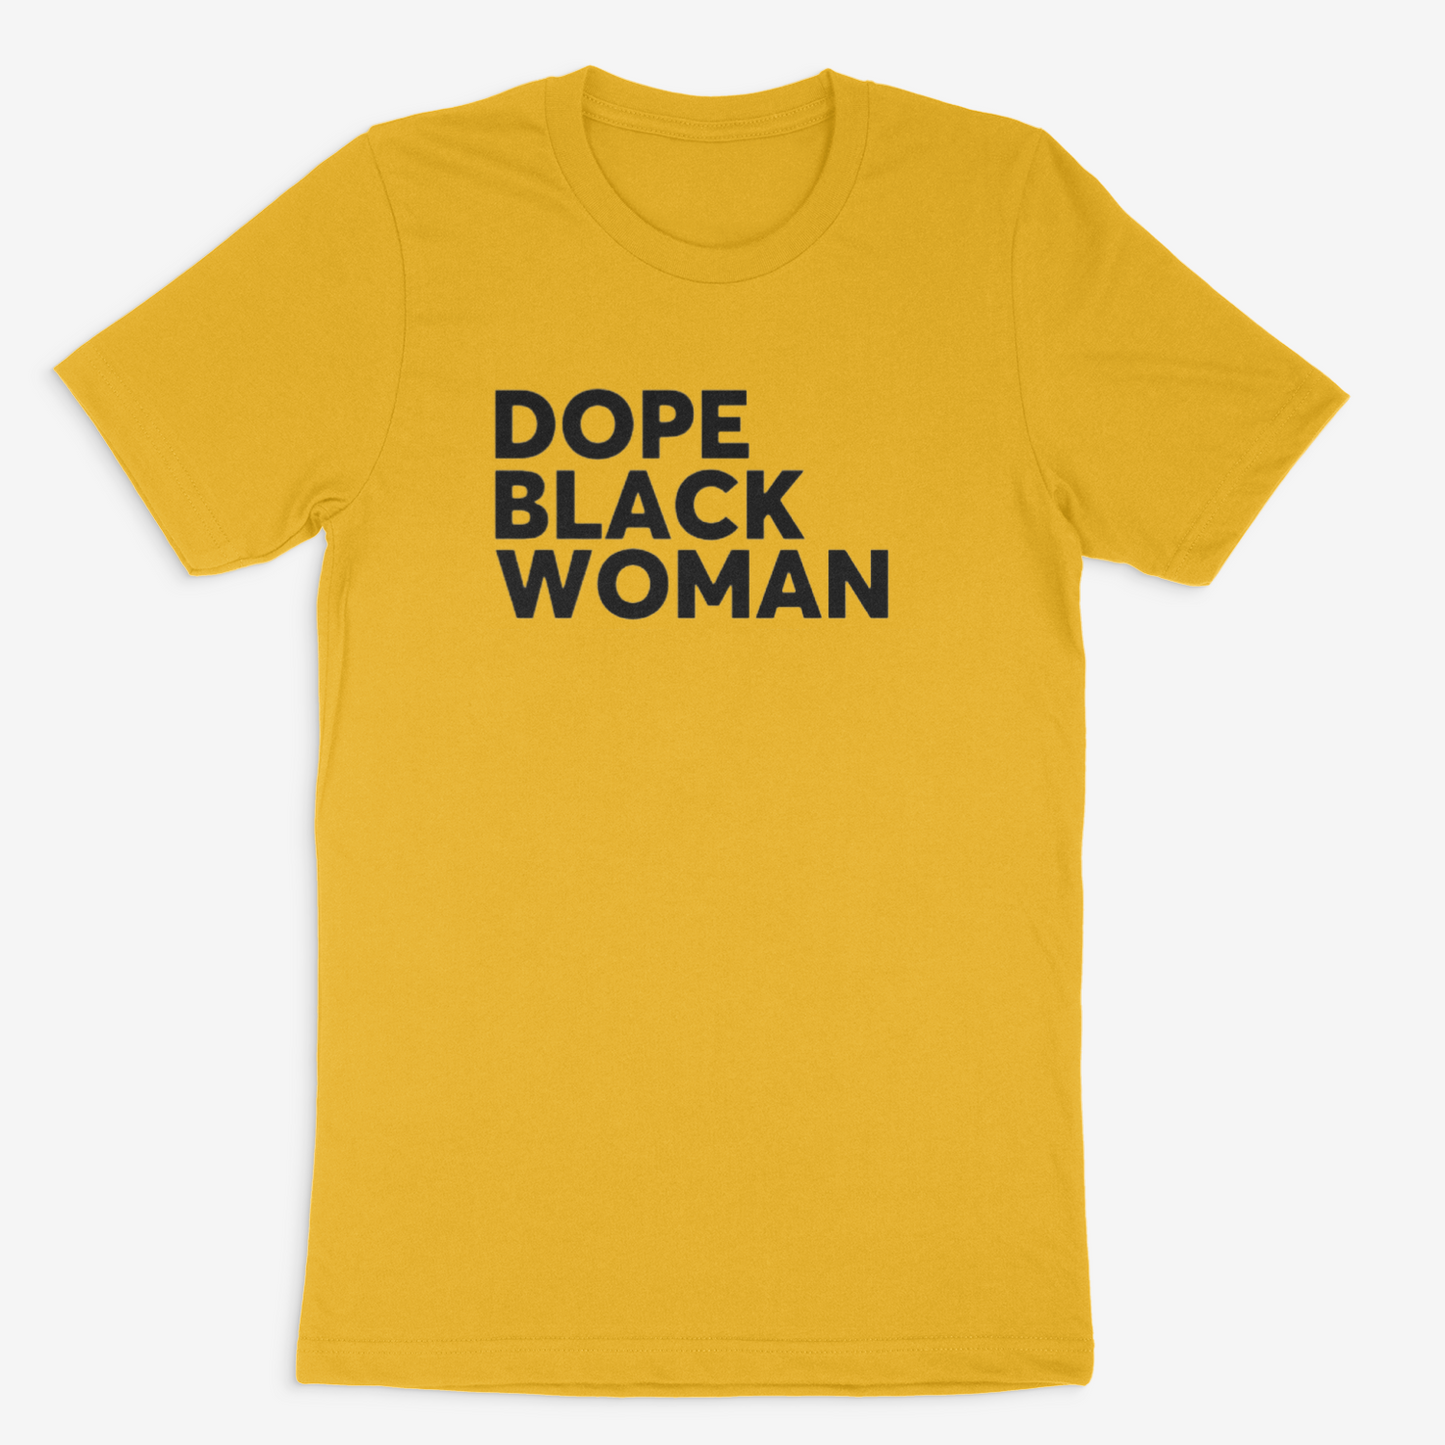 Dope Black Woman Tee